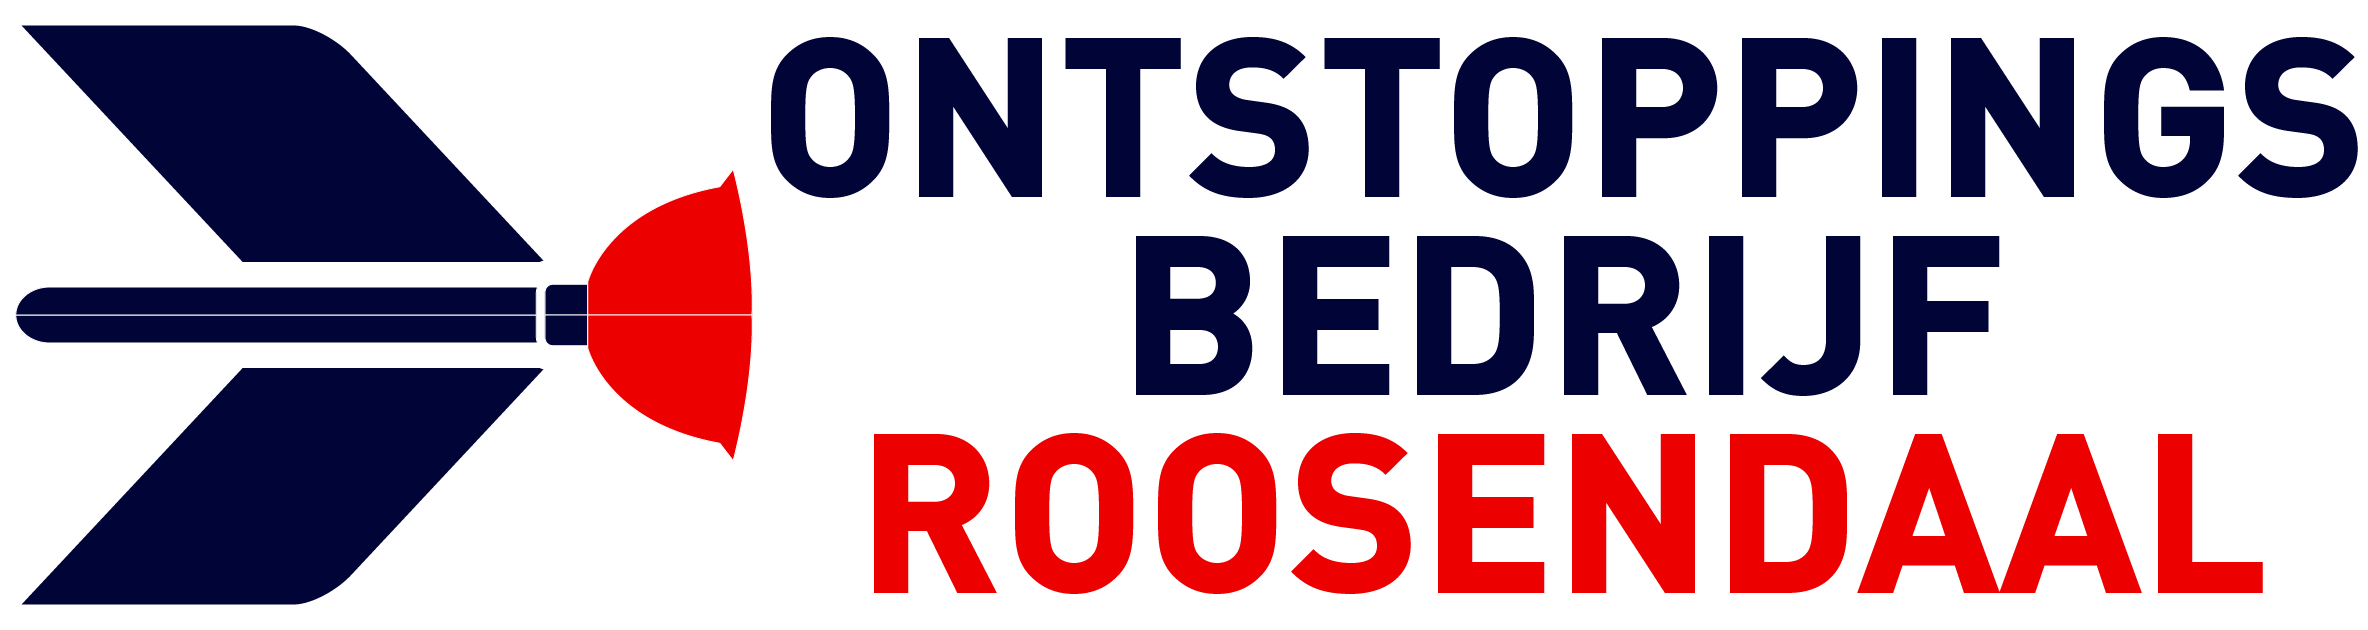 Ontstoppingsbedrijf Roosendaal logo